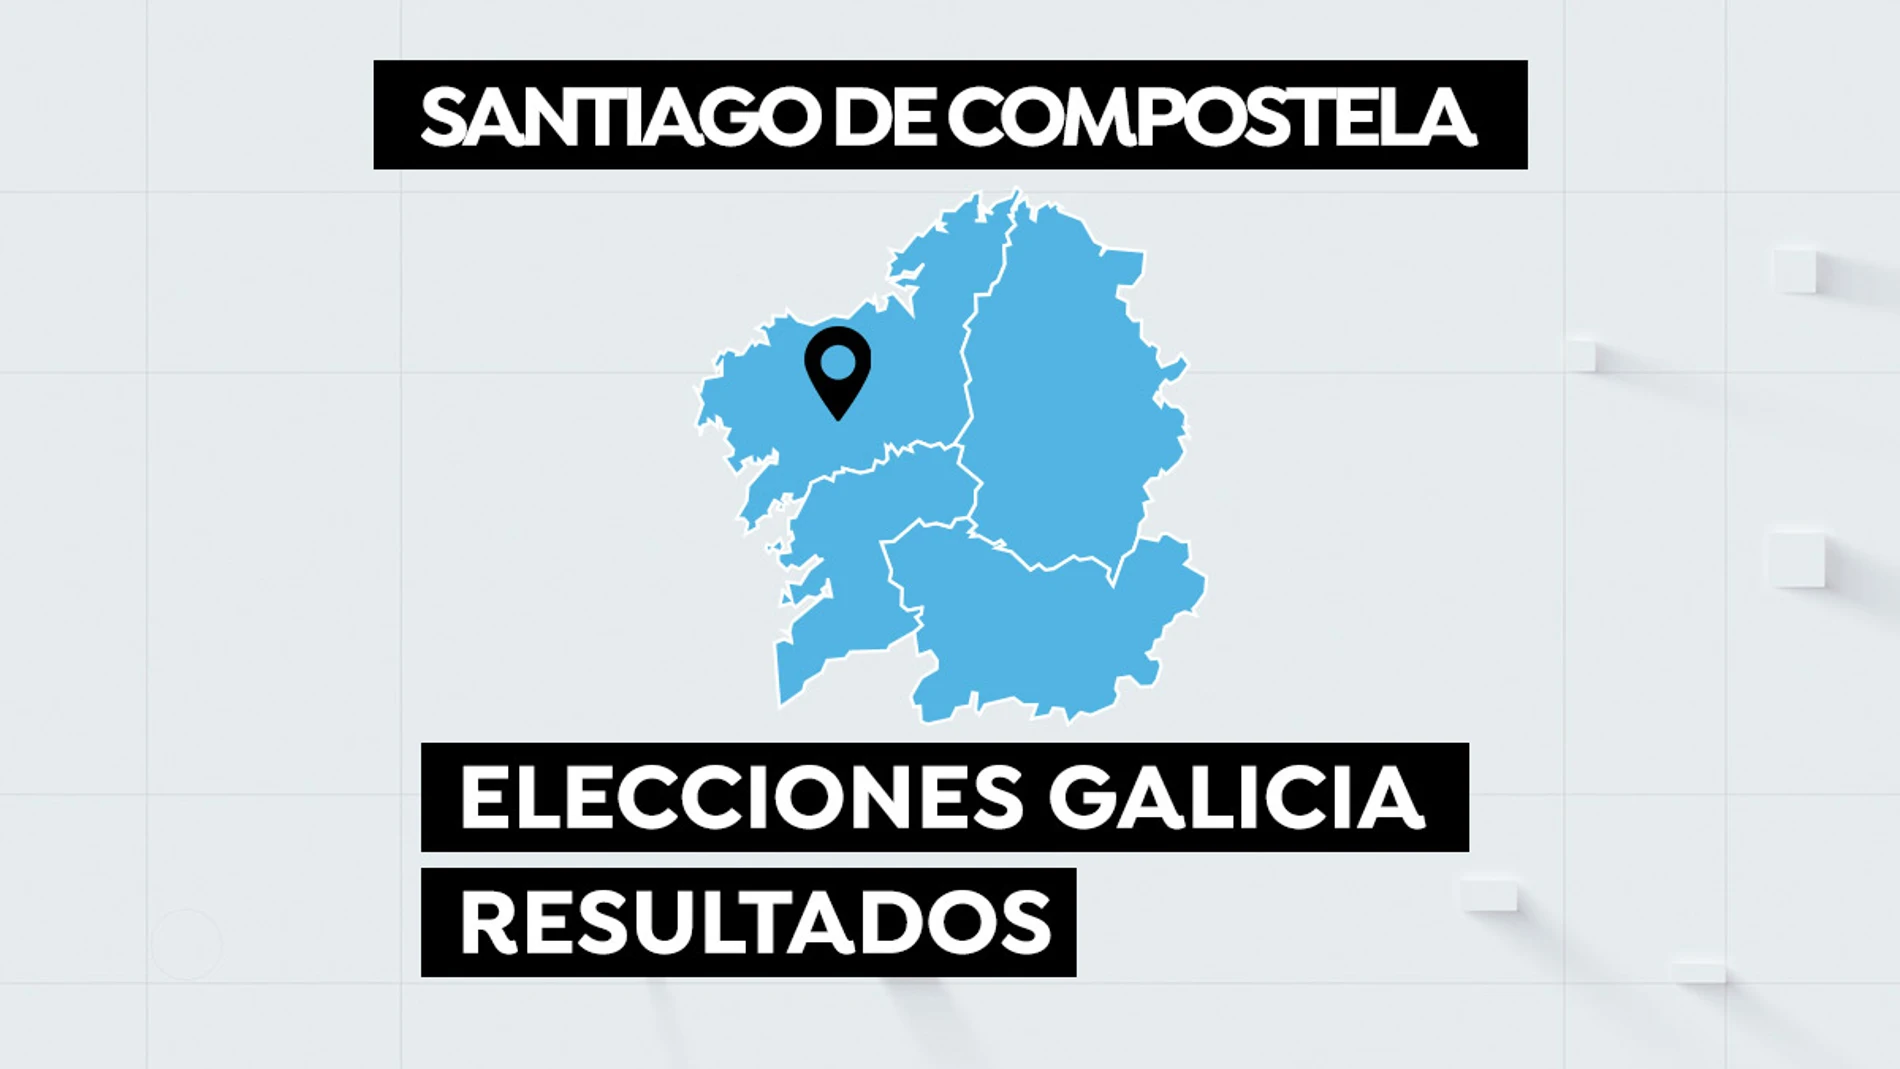 Resultado elecciones gallegas en Santiago de Compostela